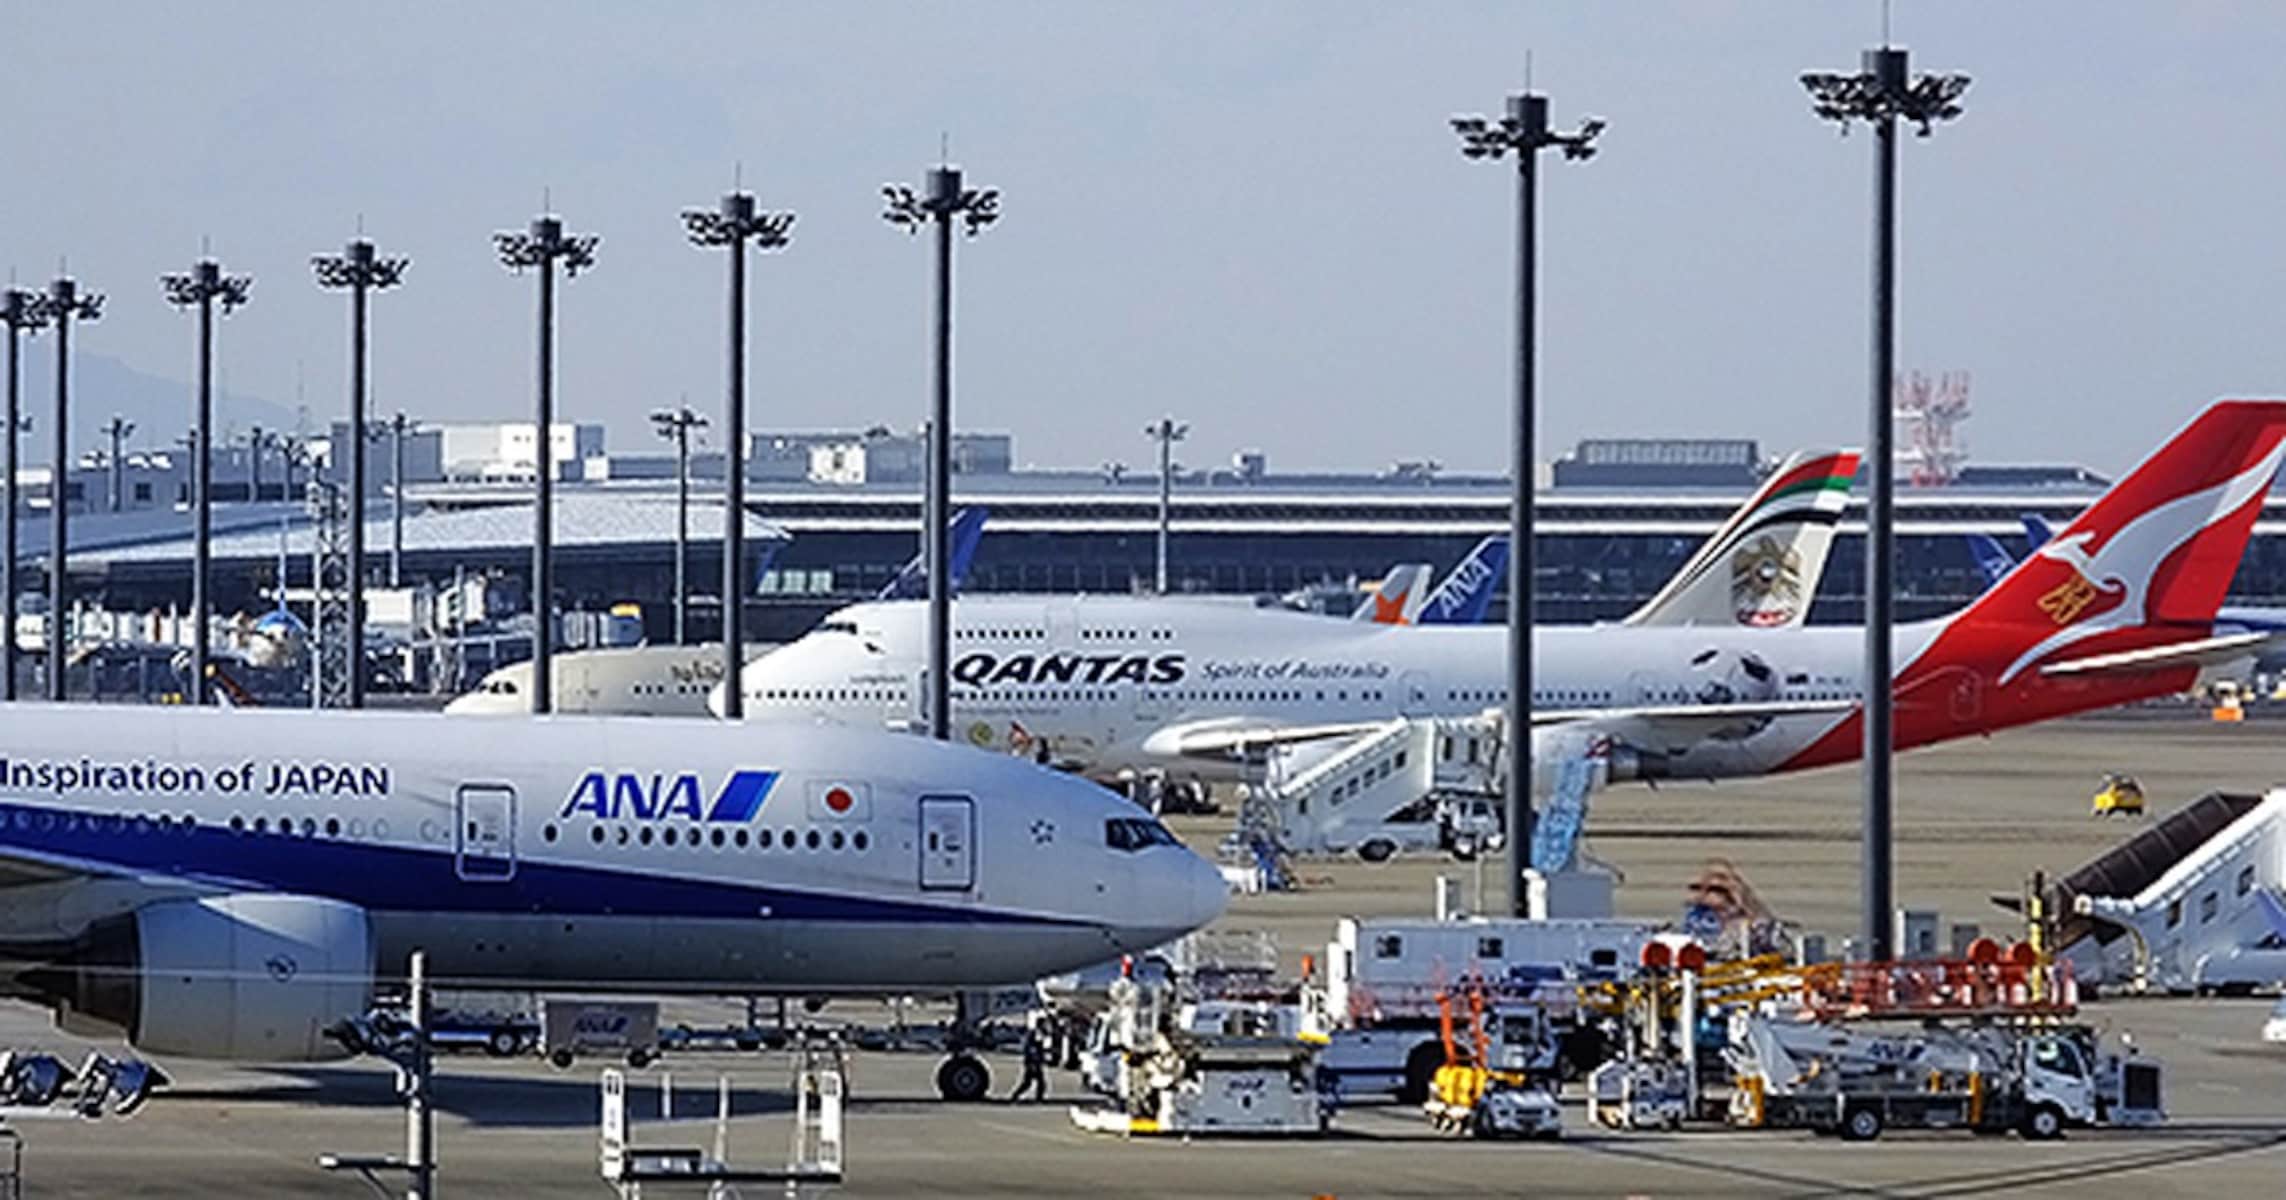 悩ましい「成田空港に何線で行くか」問題。JRと京成の“役割分担”ですっきり解決!?